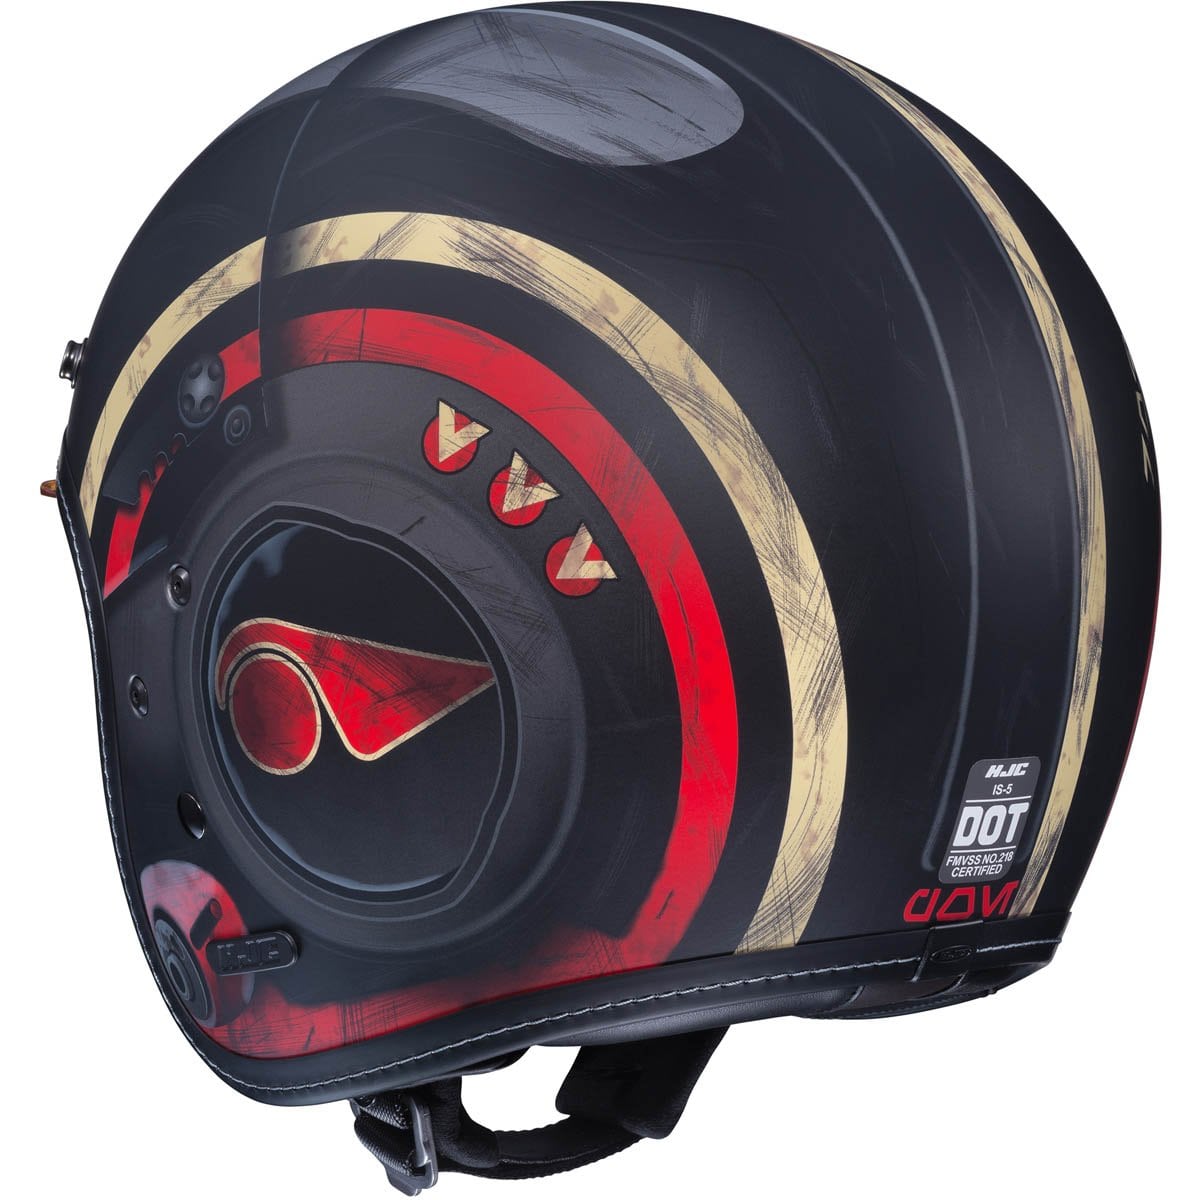 HJC 2018 | IS-5 Poe Dameron Helmet